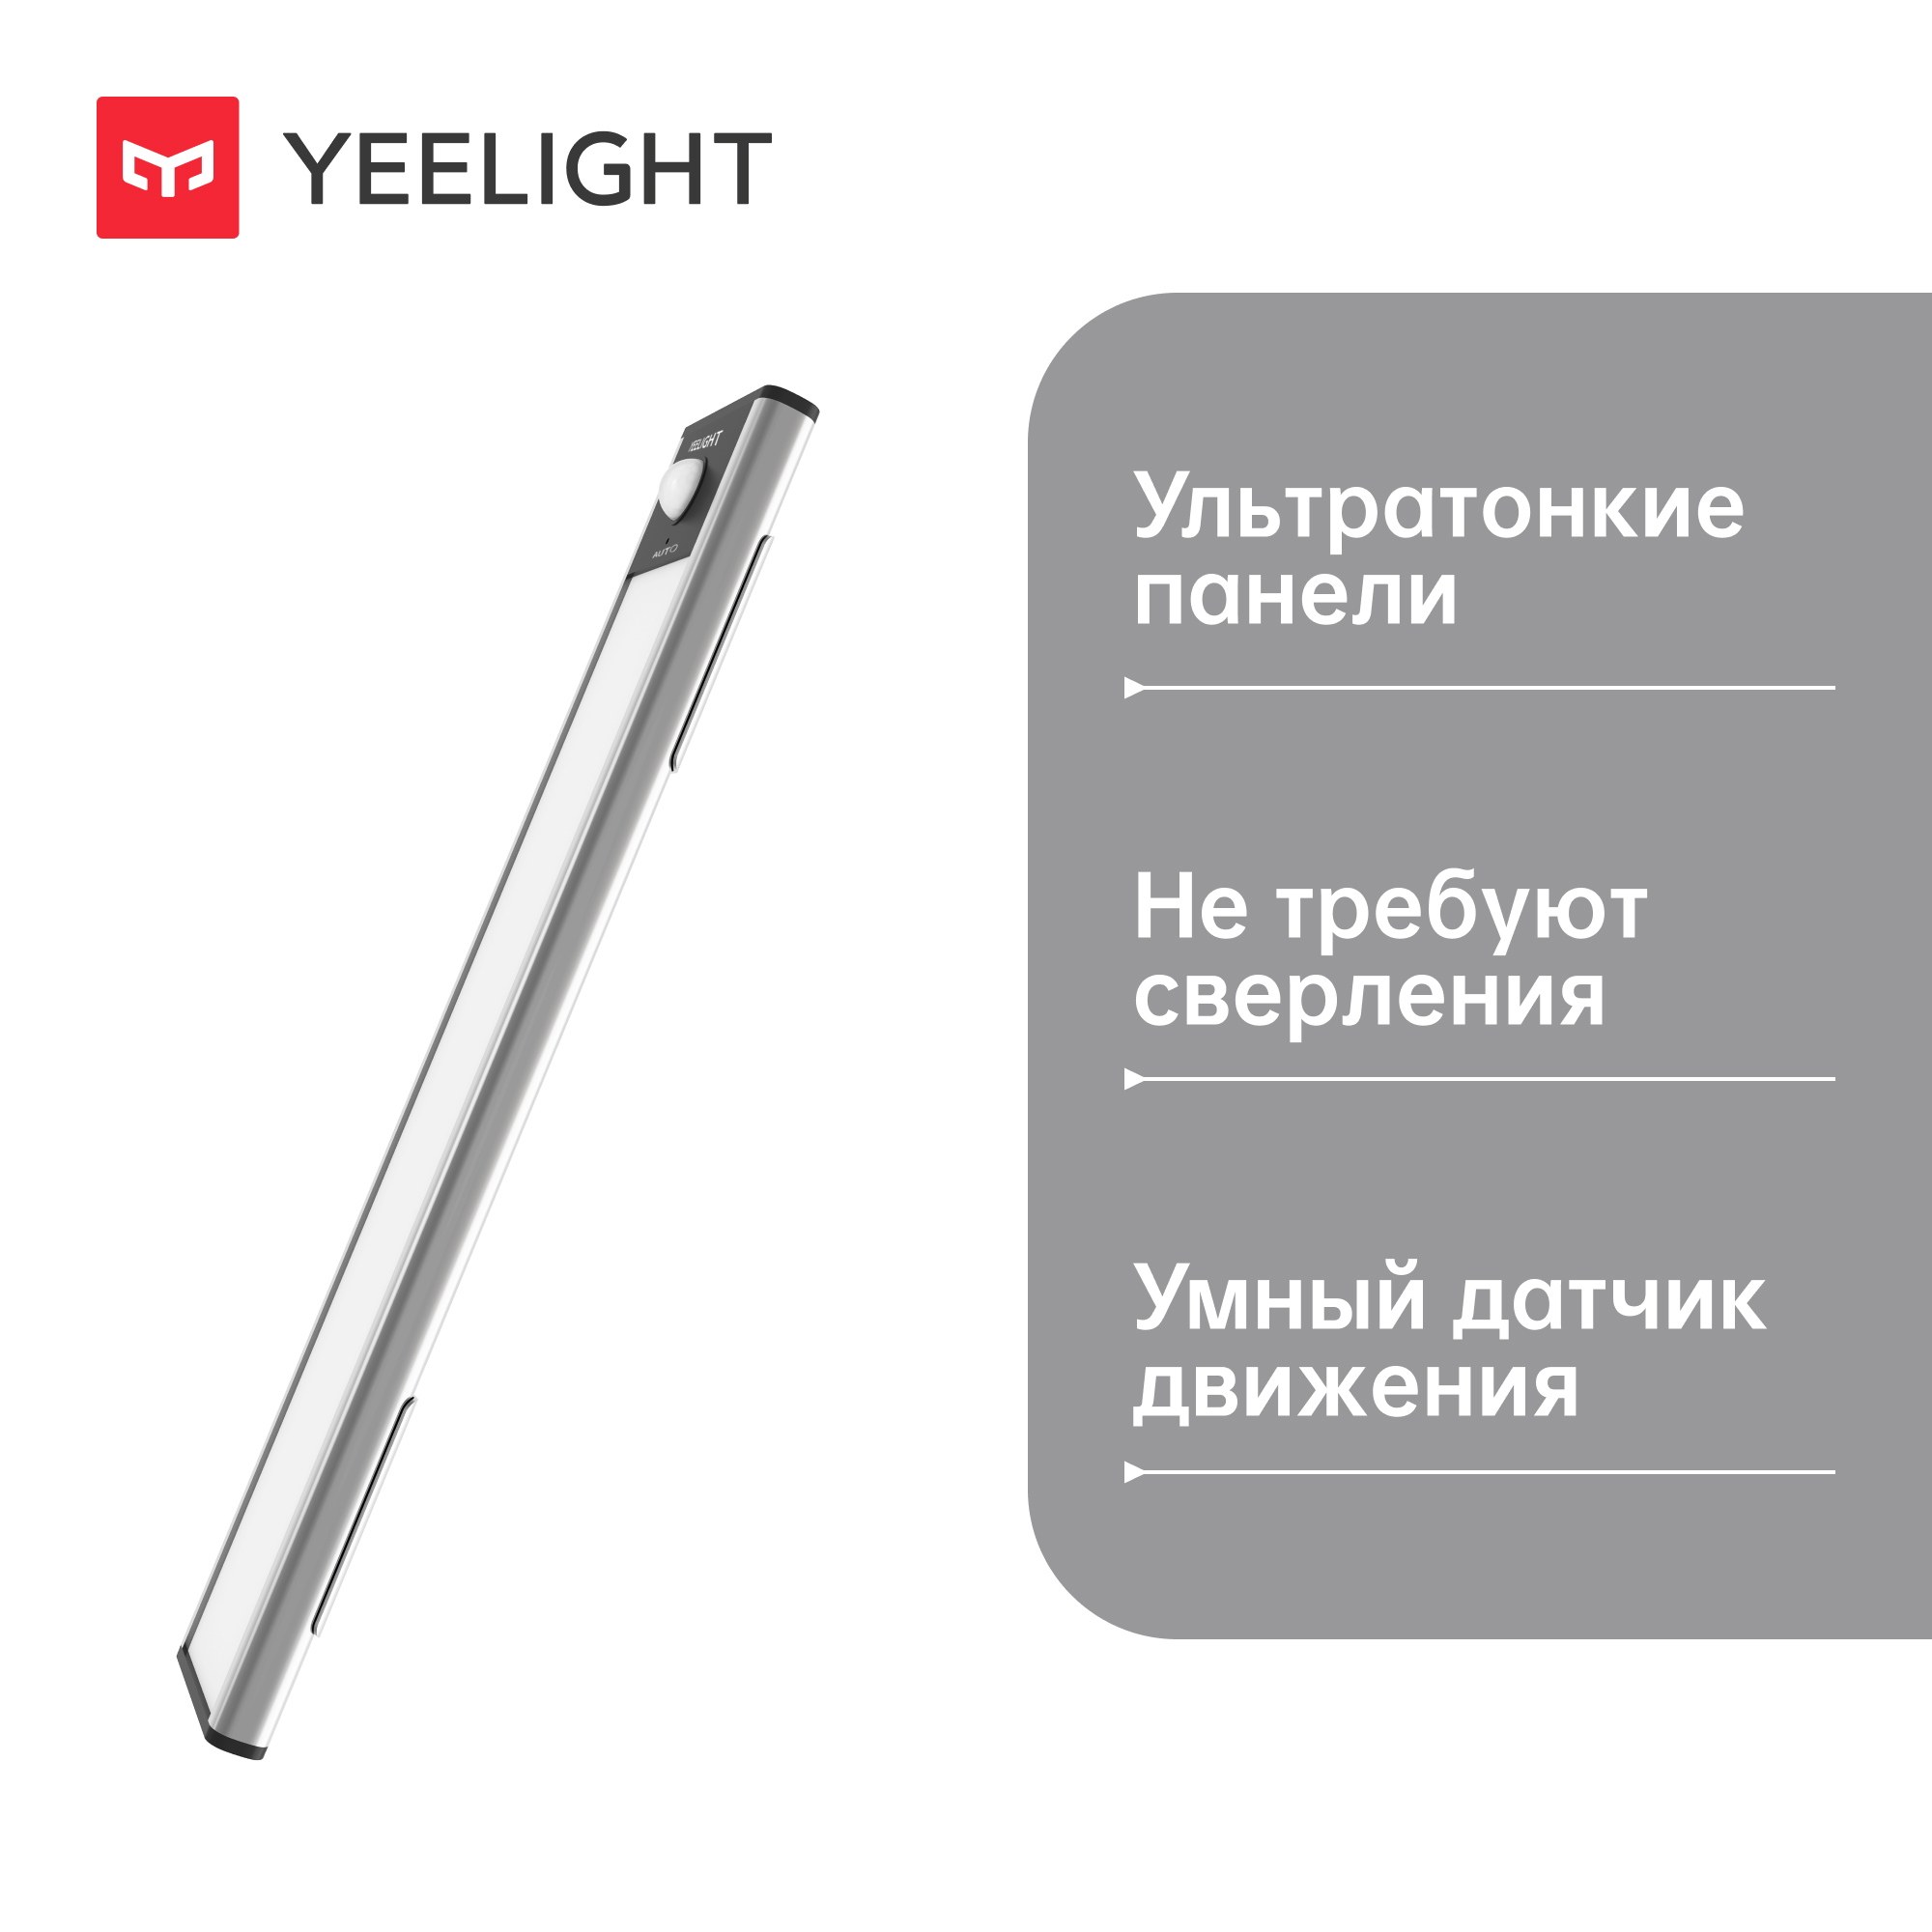 Панель световая Yeelight Motion Sensor Closet Light A40 с датчиком движения, серебряная